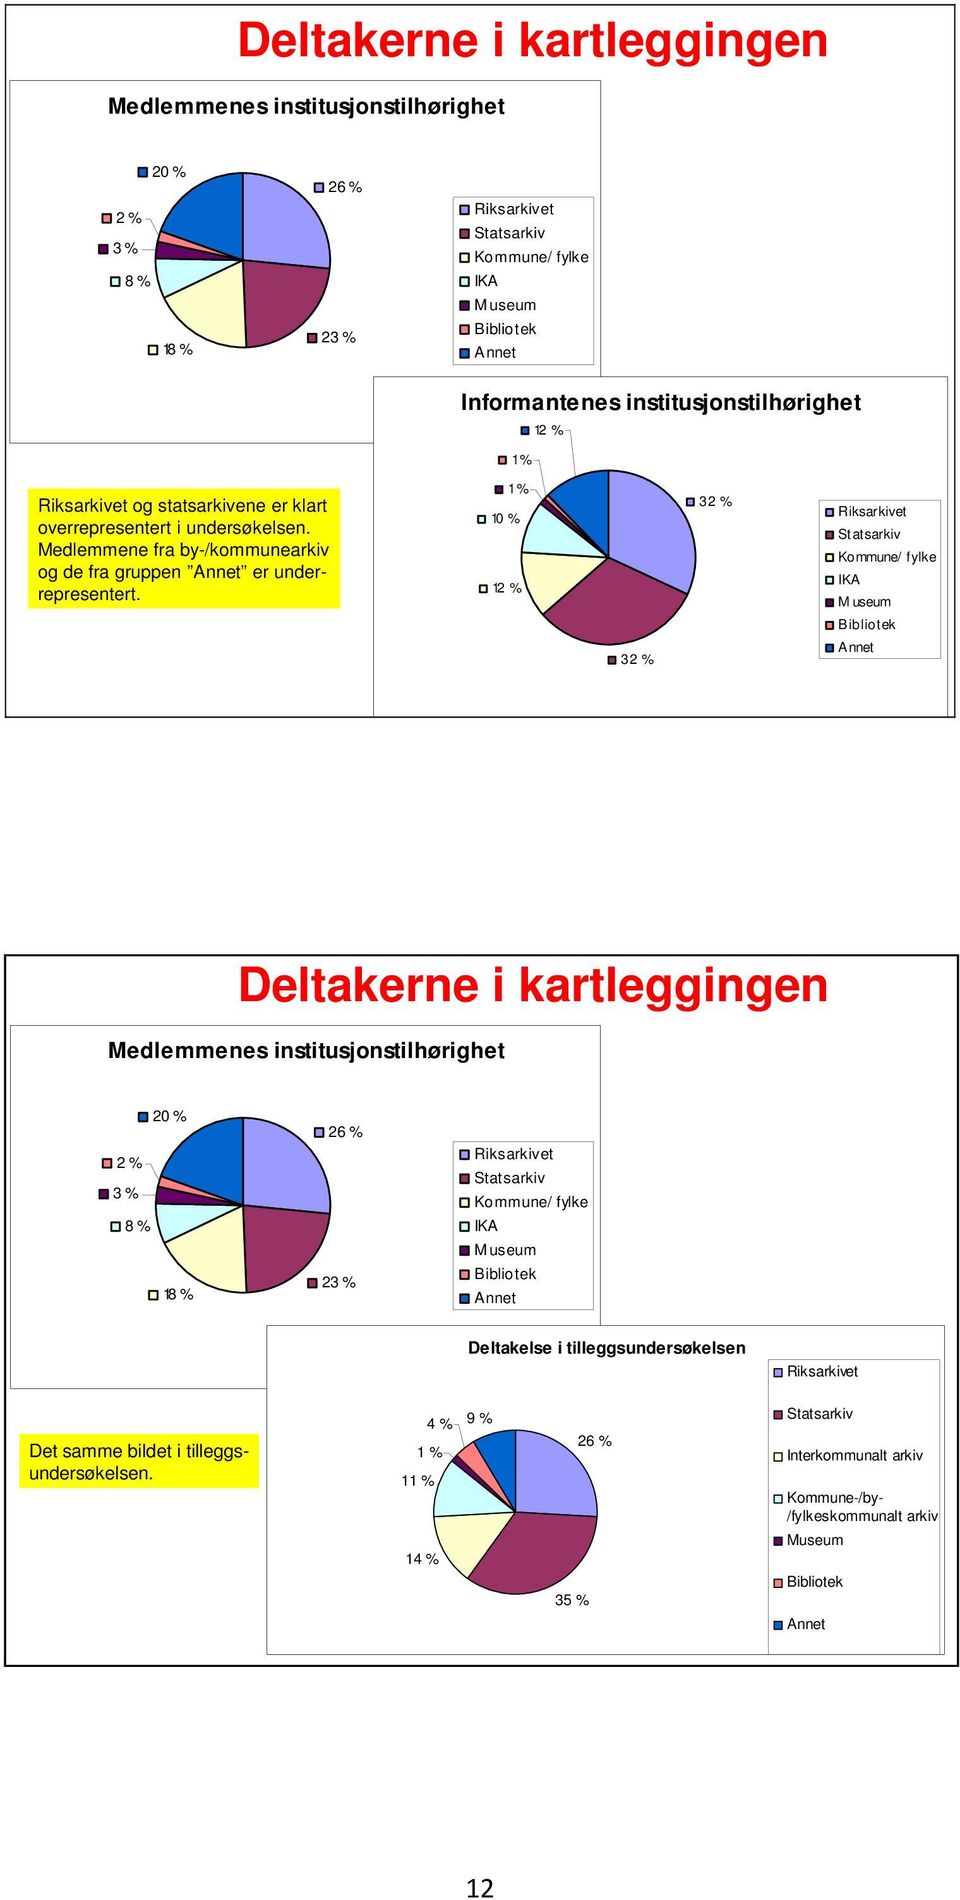 1 % 10 % 12 % 32 % 32 % Riksarkivet Statsarkiv Kommune/ f ylke IKA M useum Bibliotek Annet Deltakerne i kartleggingen Medlemmenes institusjonstilhørighet 20 % 2 % 3 % 8 % 18 % 26 % 23 % Riksarkivet